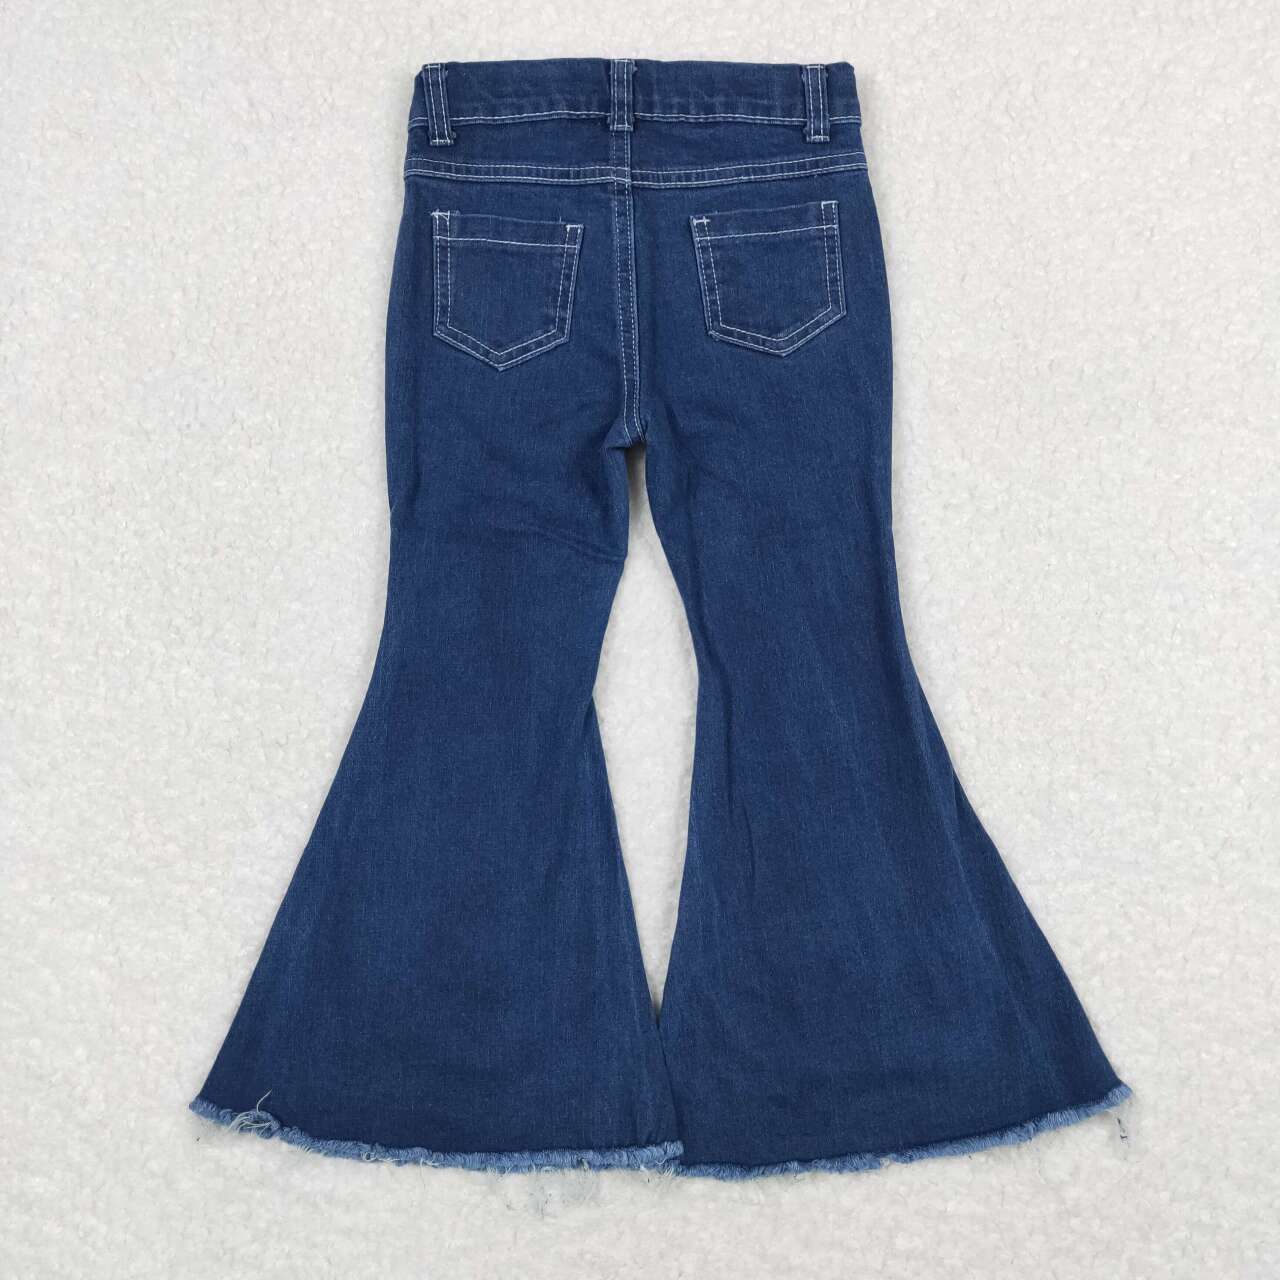 solid dark blue washed denim pants toddler girls  jeans